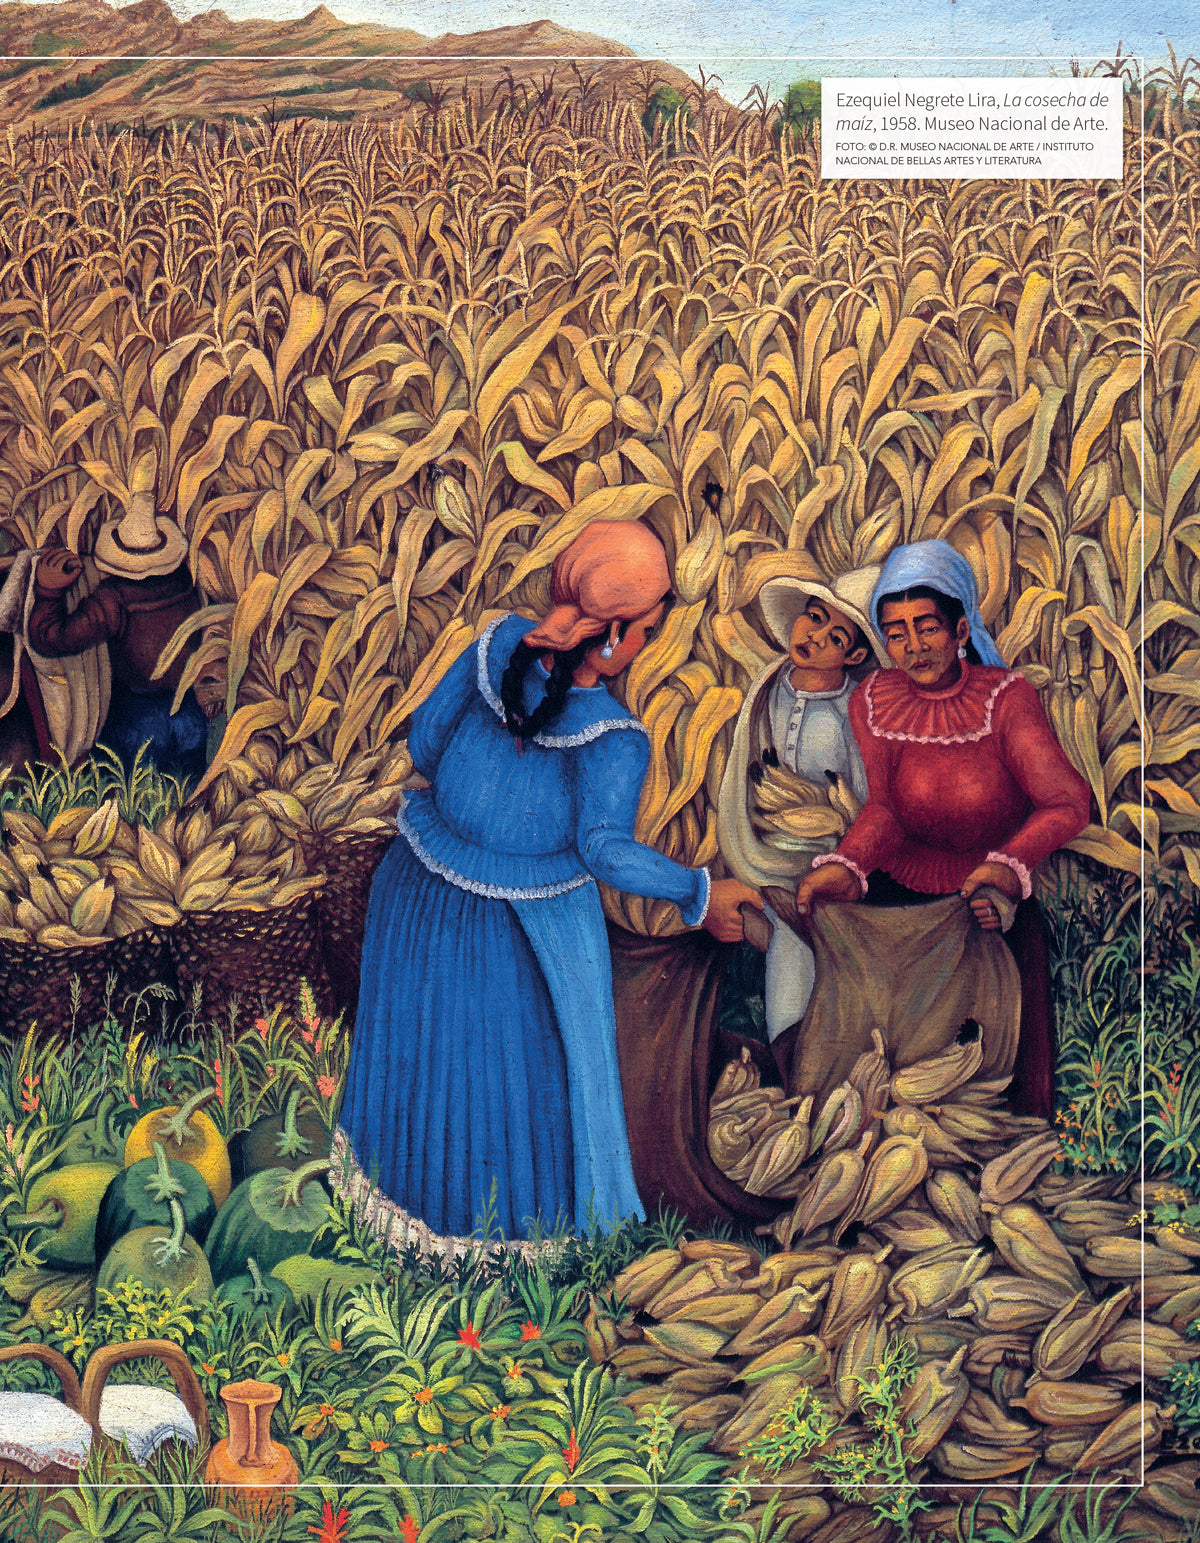 El maíz en México